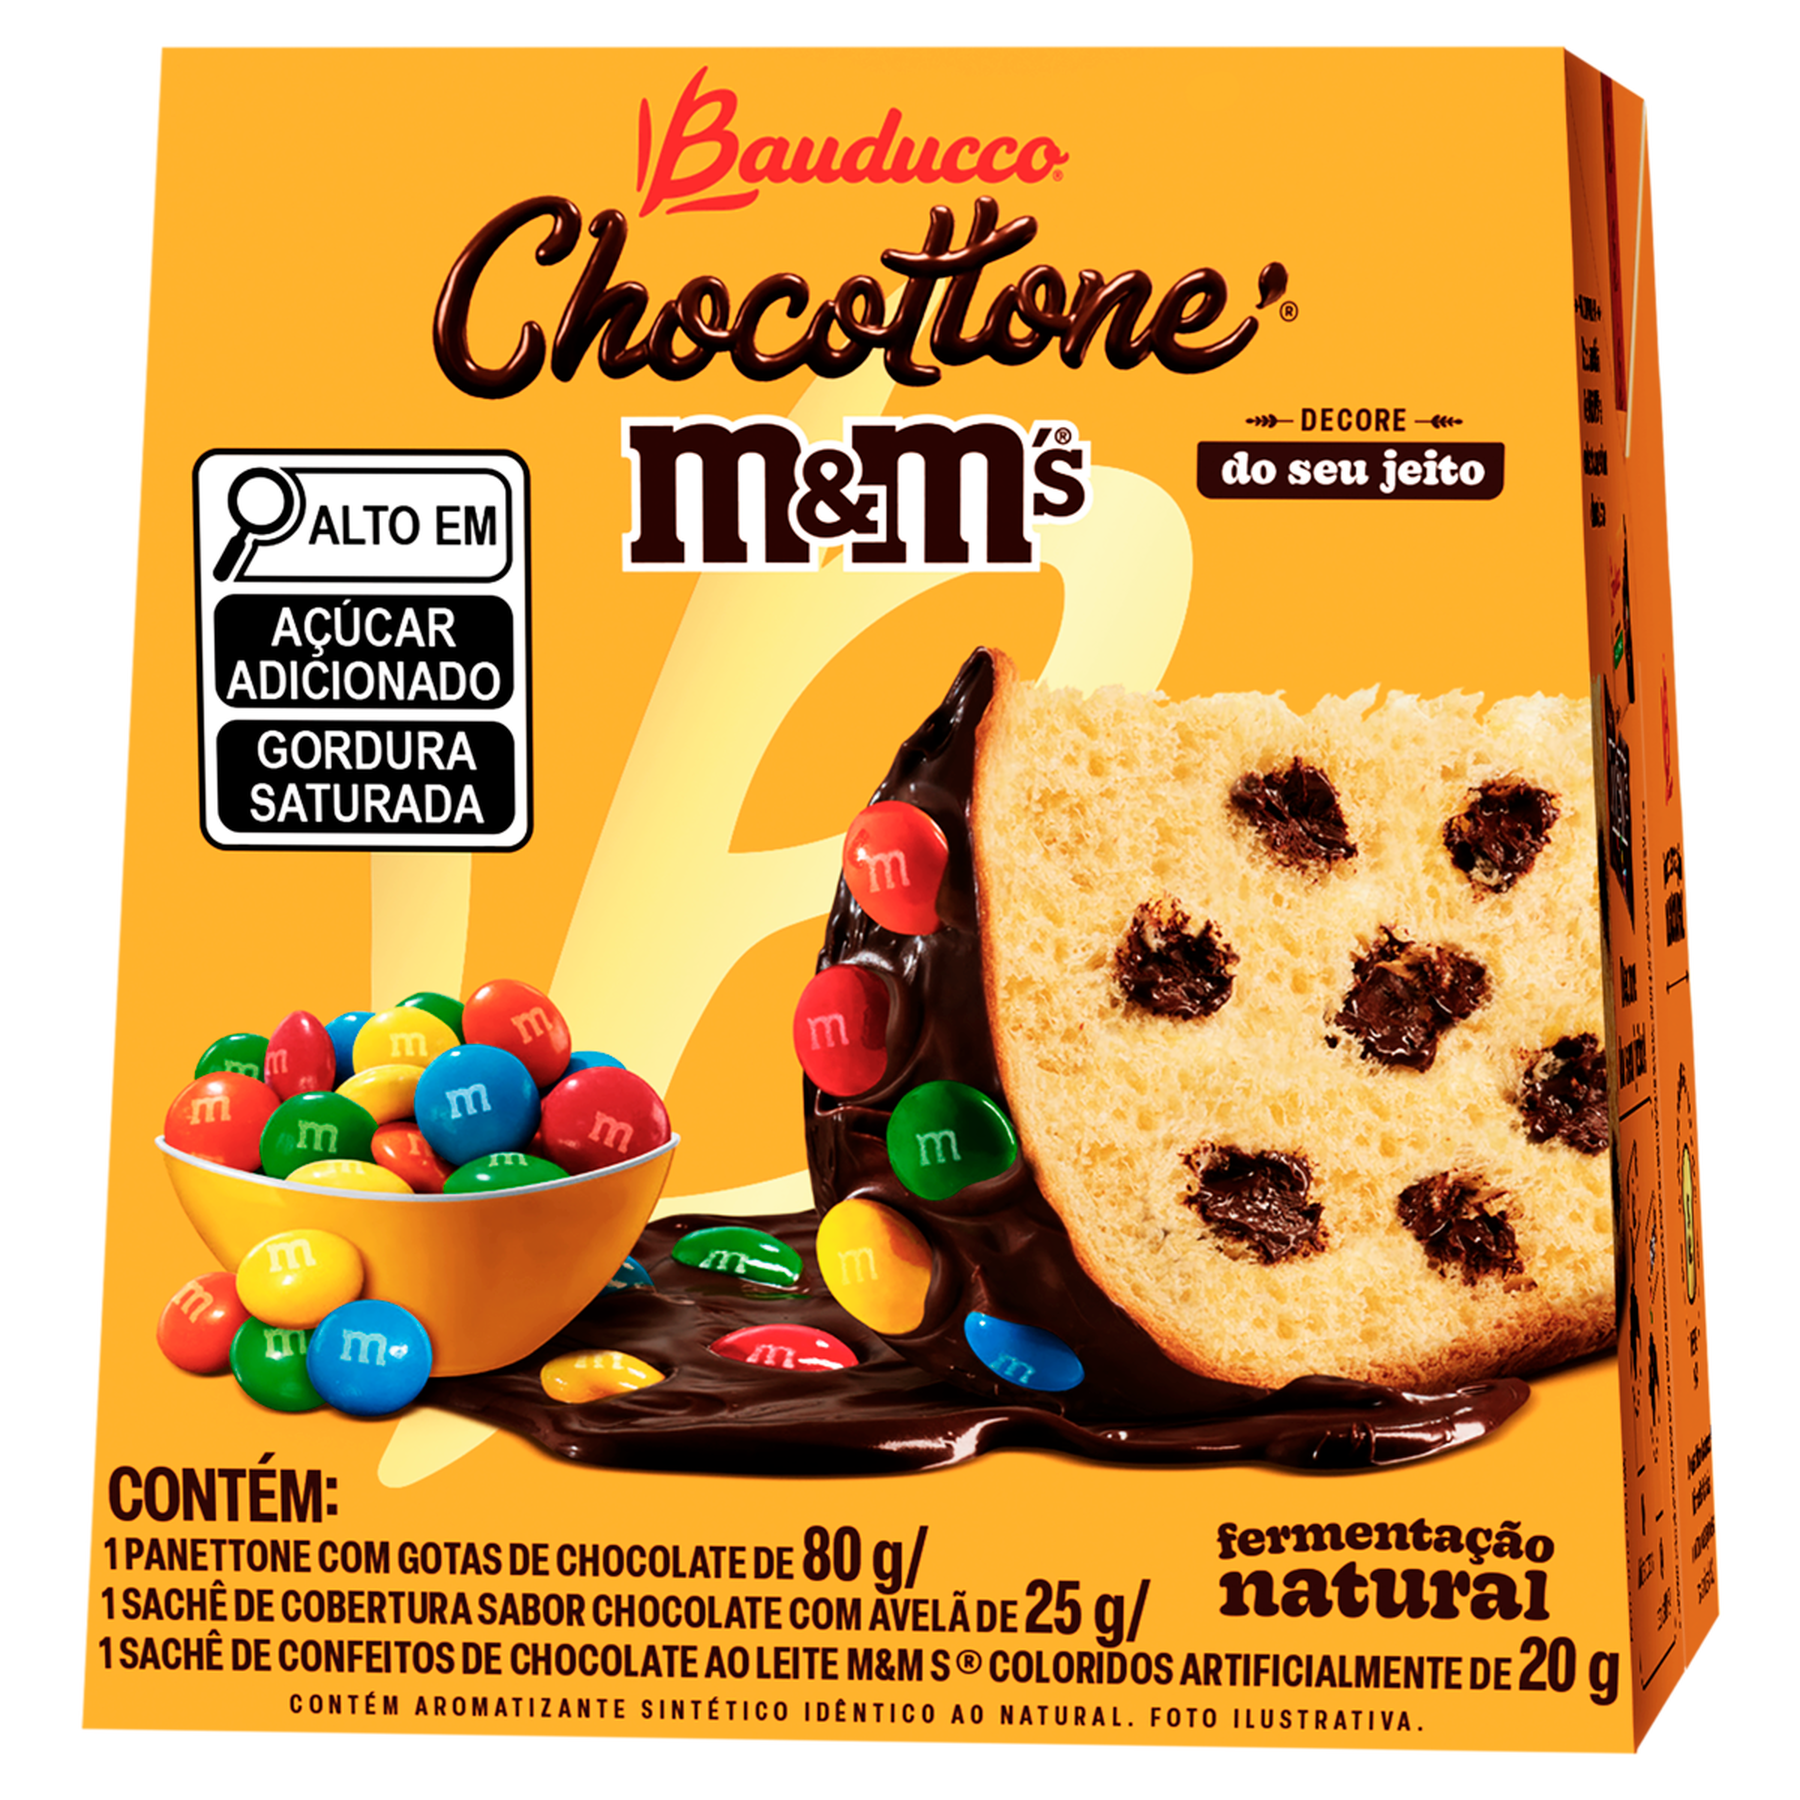 Panettone MMS com Gotas de Chocolate Chocottone Bauducco Caixa 80g